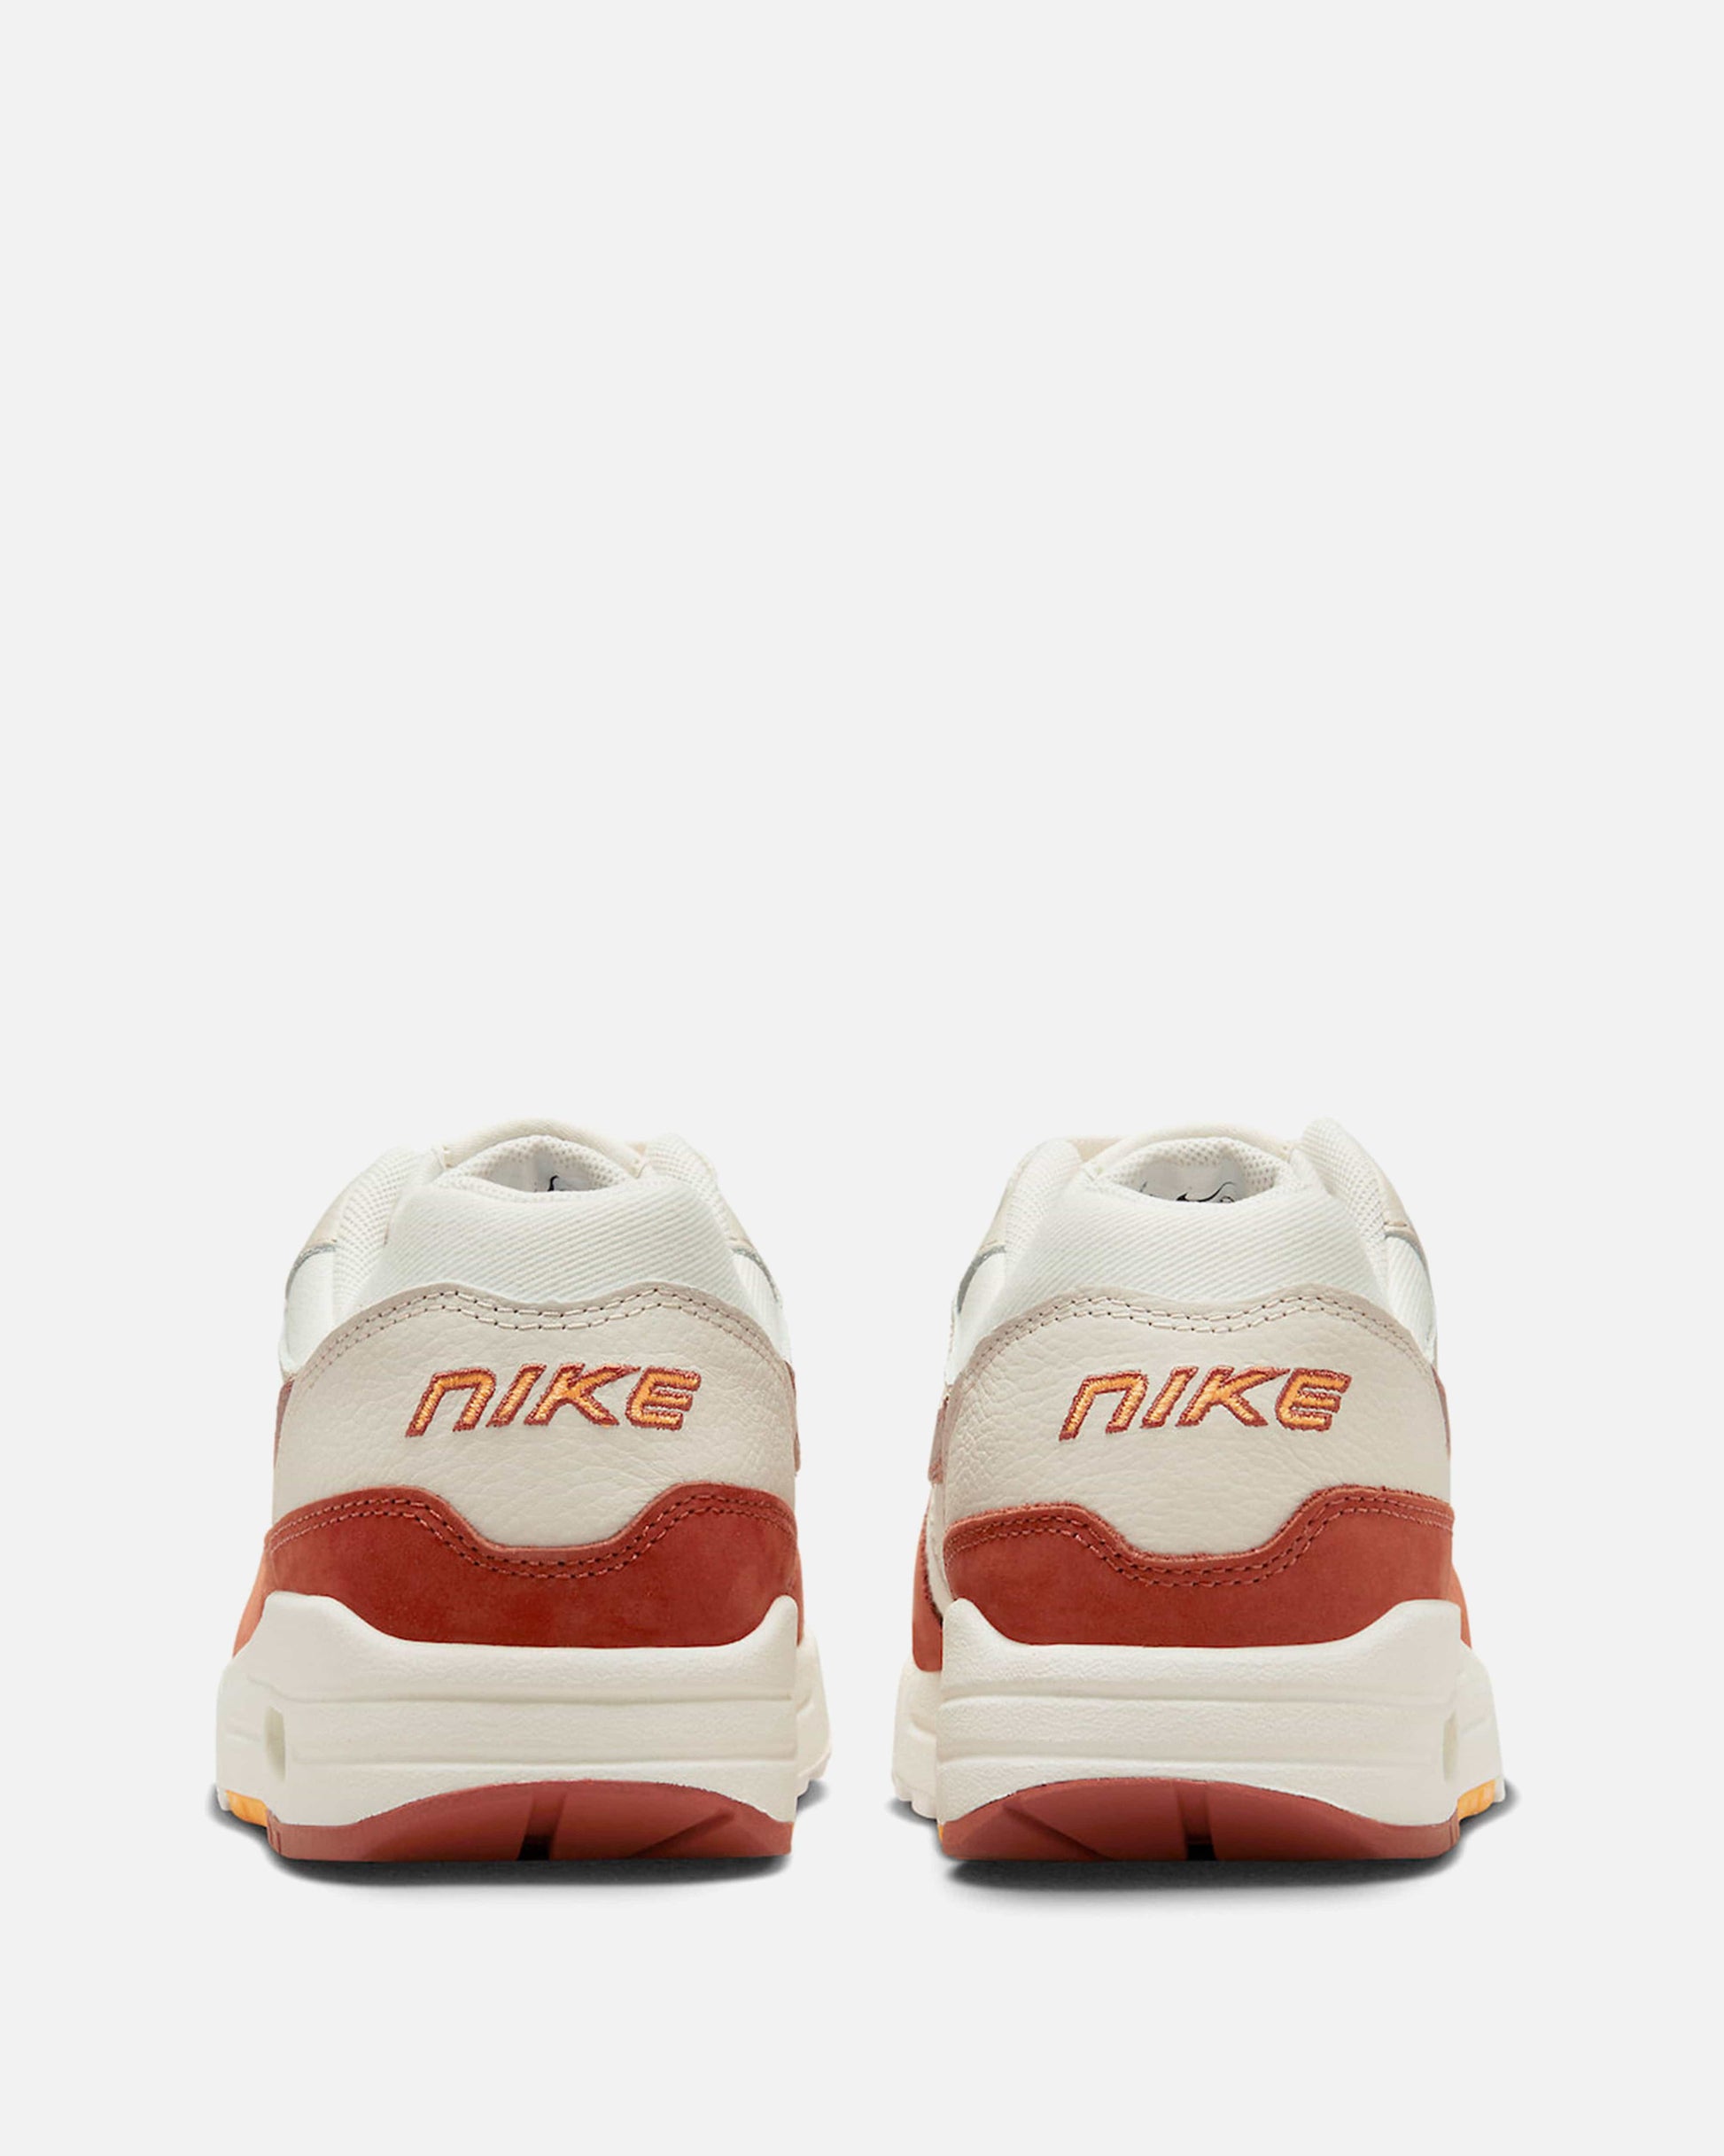 Nike Women's Shoes Air Max 1 LX 'Sail/Rugged Orange'